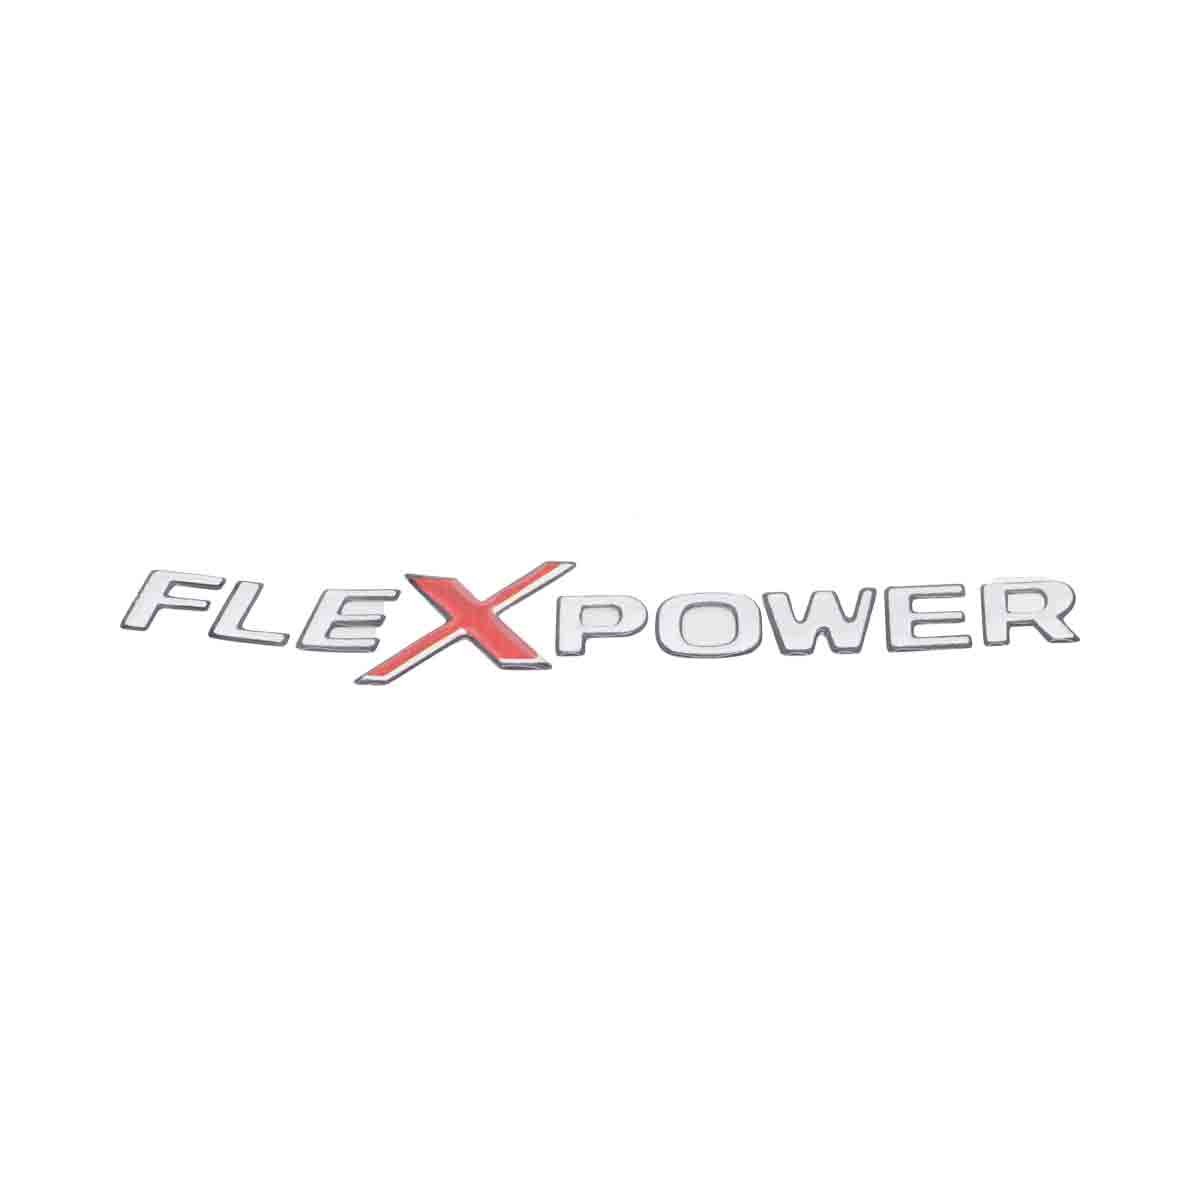 Emblema Flexpower Resinado GM